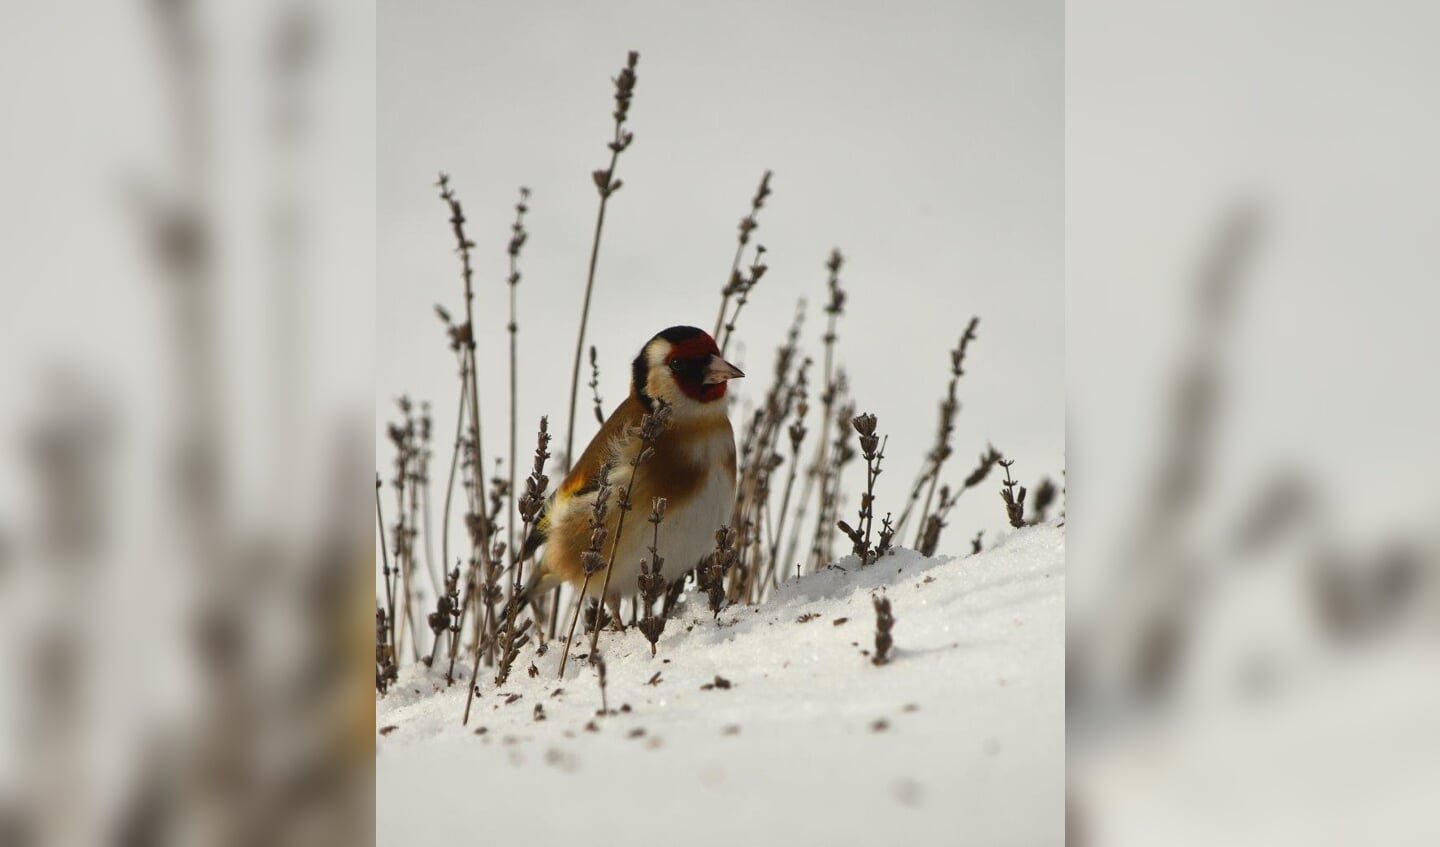 Bijgaand een paar sneeuwfoto's. Die van de Romboutstoren in Andel
heb ik afgelopen maandag gemaakt. Het sneeuwde toen best. De vogeltjes zijn
van gisteren. Puttertjes die van de Lavendel aten. 